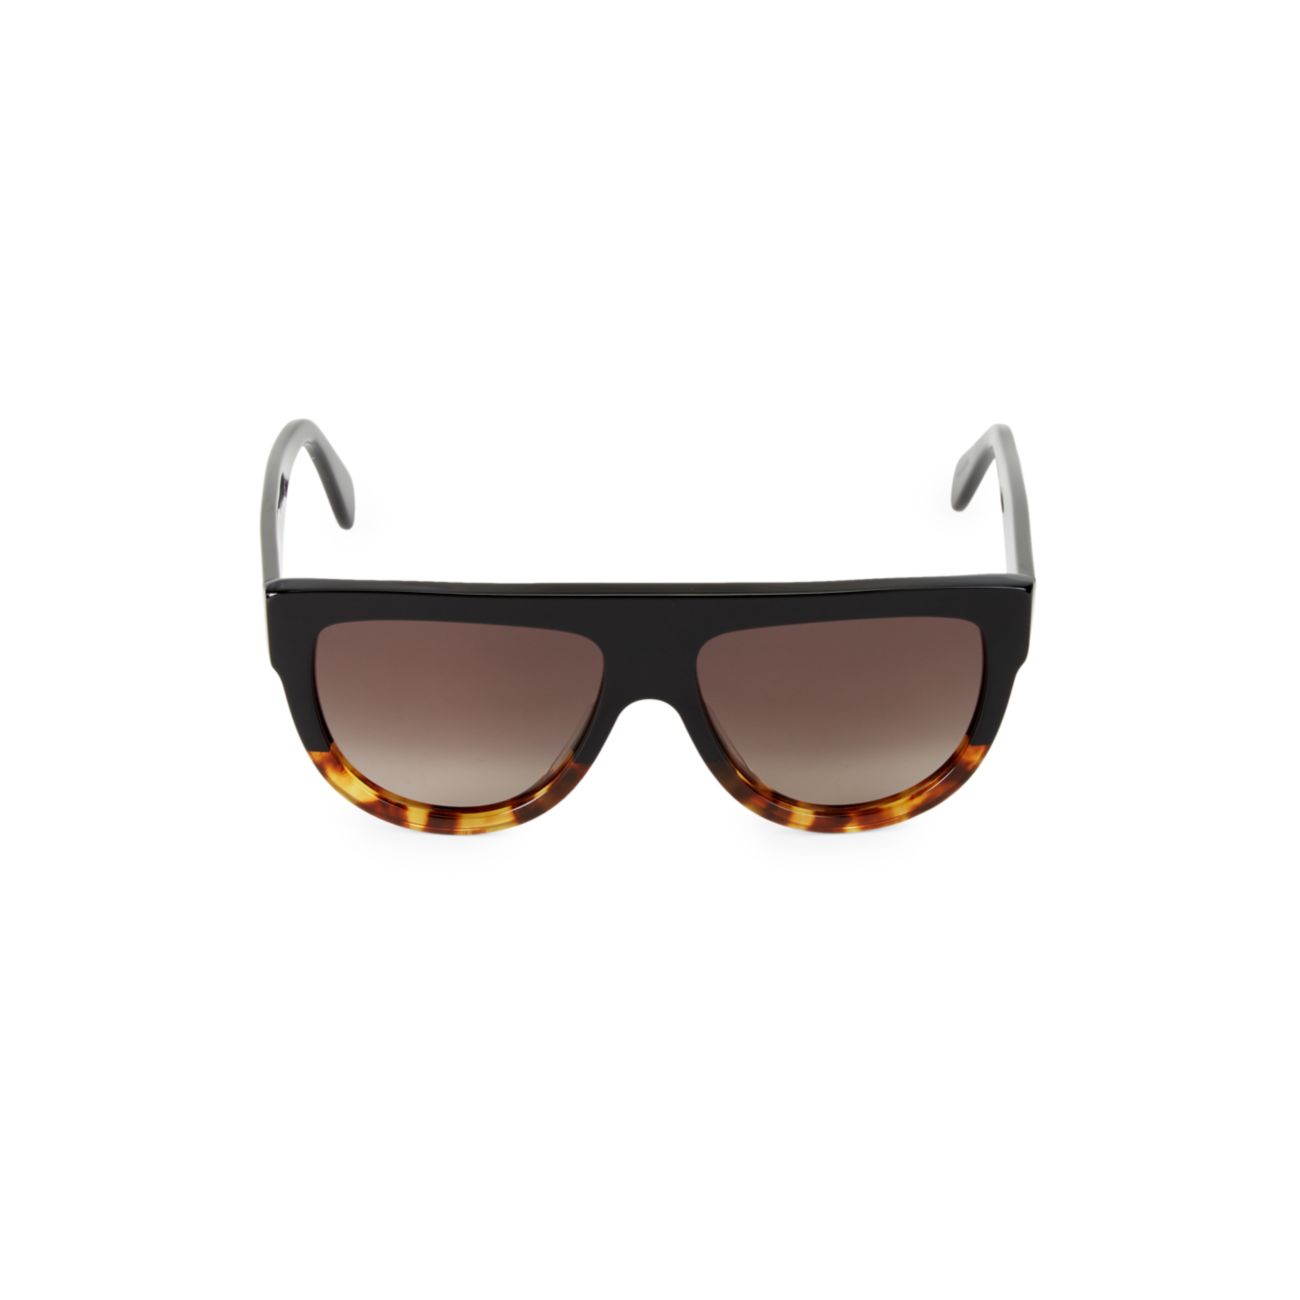 Круглые солнцезащитные очки Shield 58 мм с плоским верхом CELINE